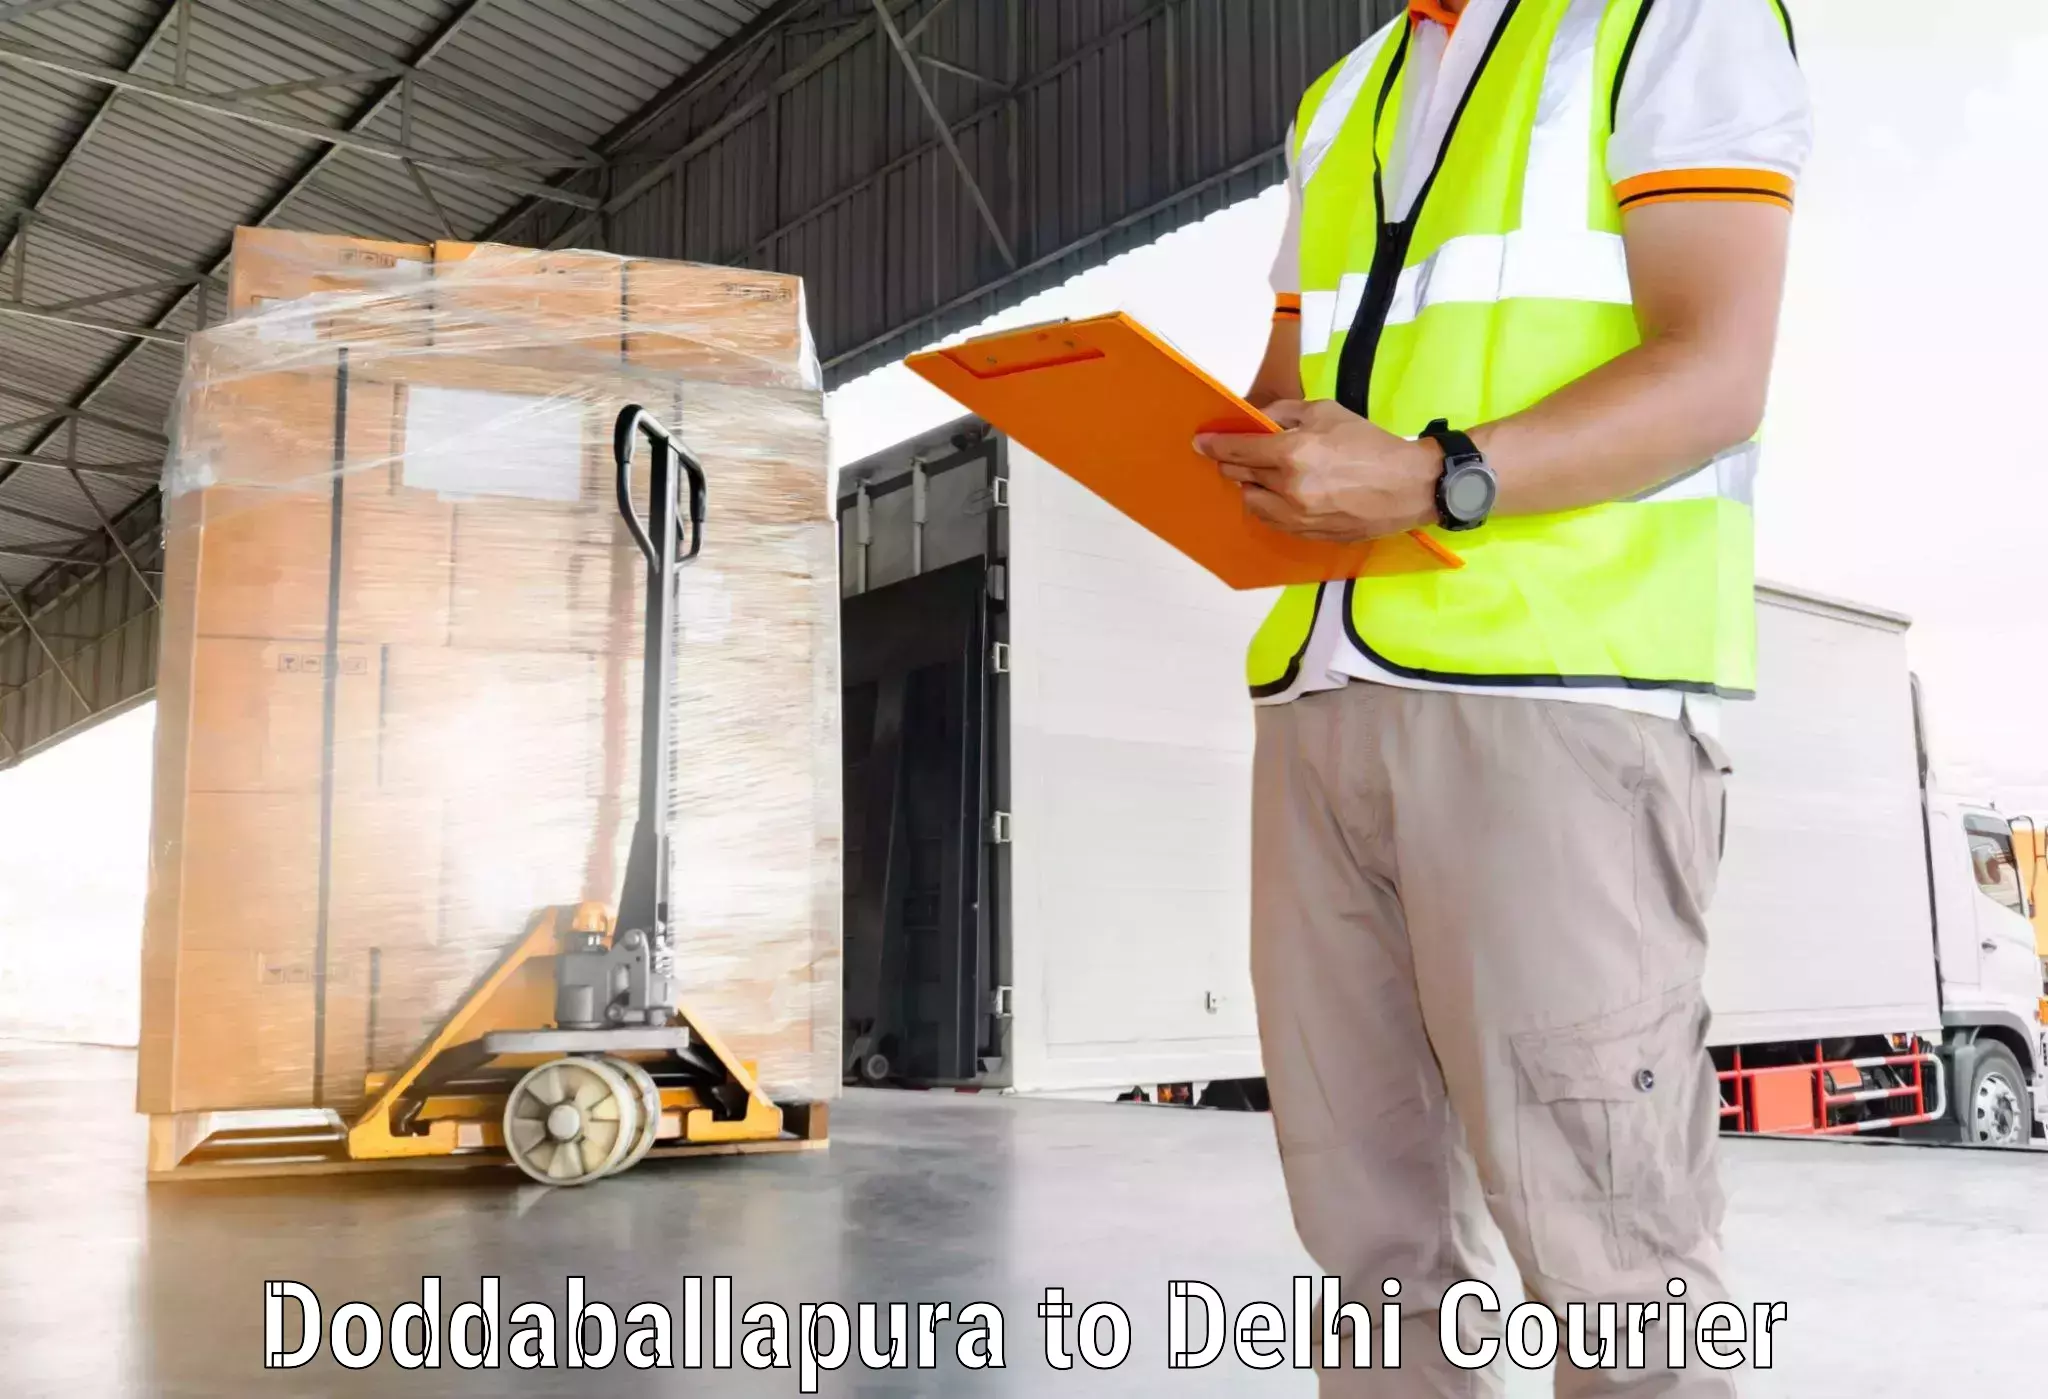 Advanced shipping services Doddaballapura to NIT Delhi